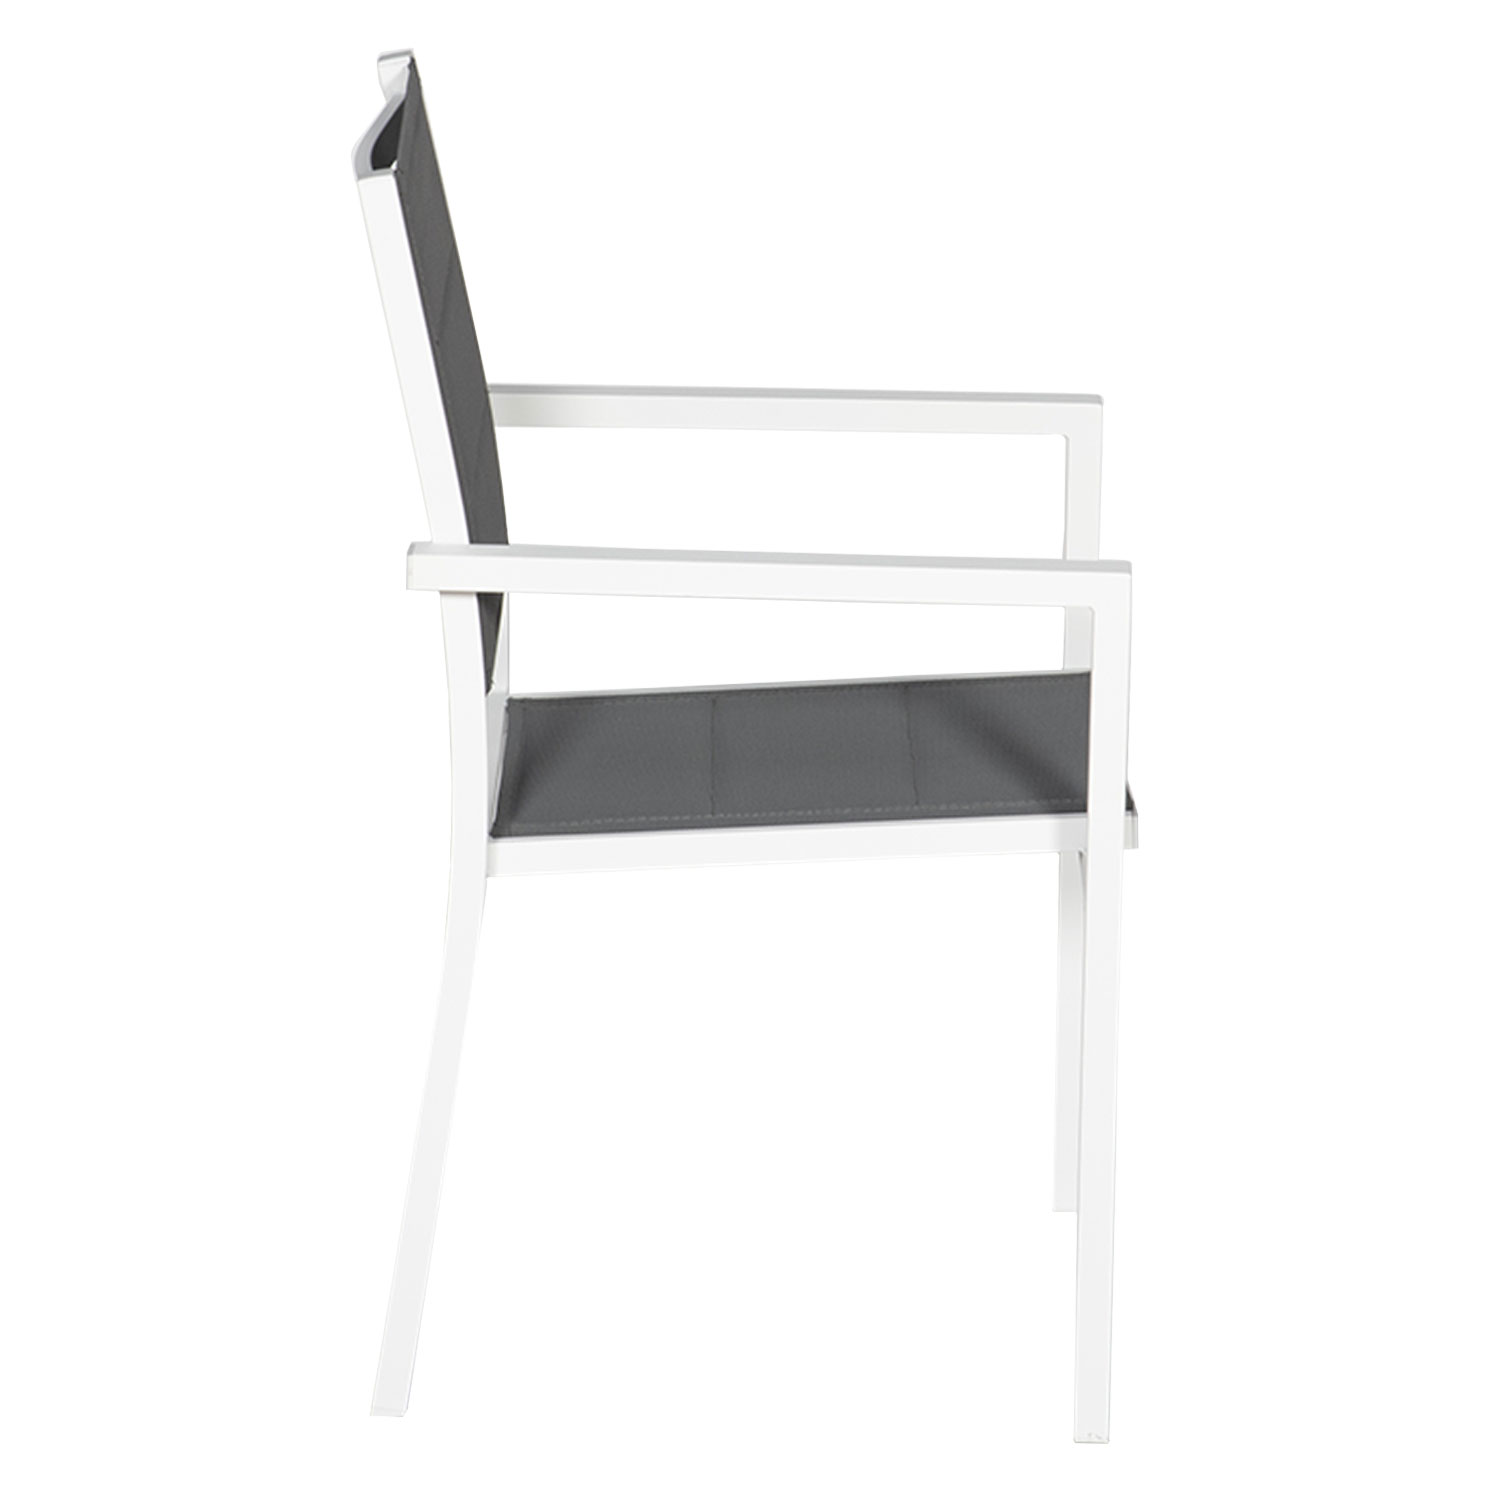 Juego de 10 sillas tapizadas de aluminio blanco - textileno gris